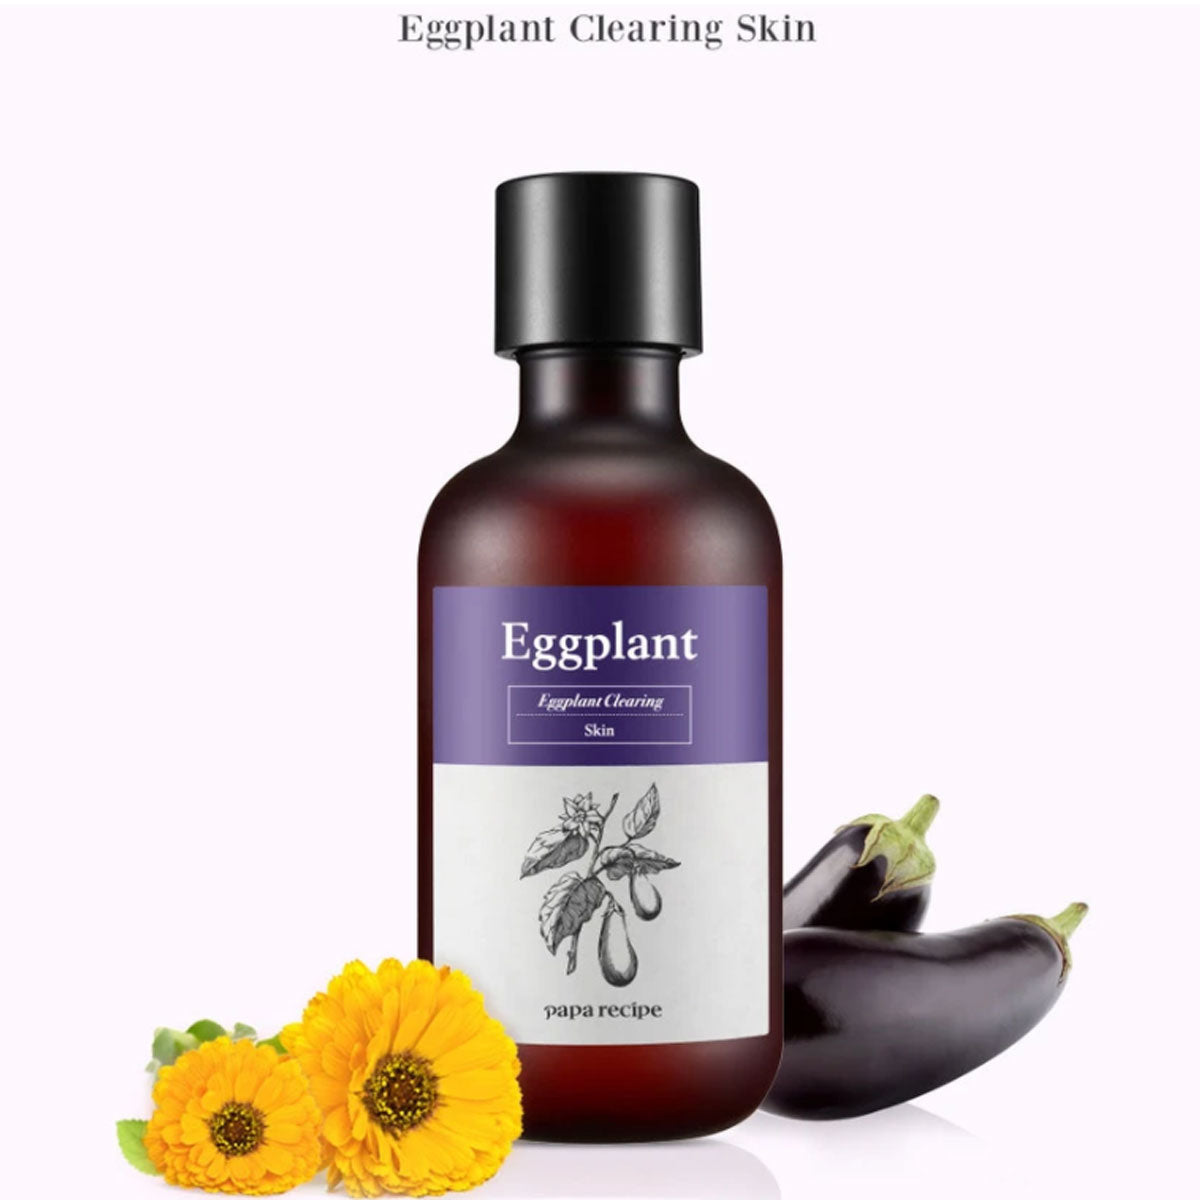 Papa Recipe - Eggplant Clearing Skin - 200 ml